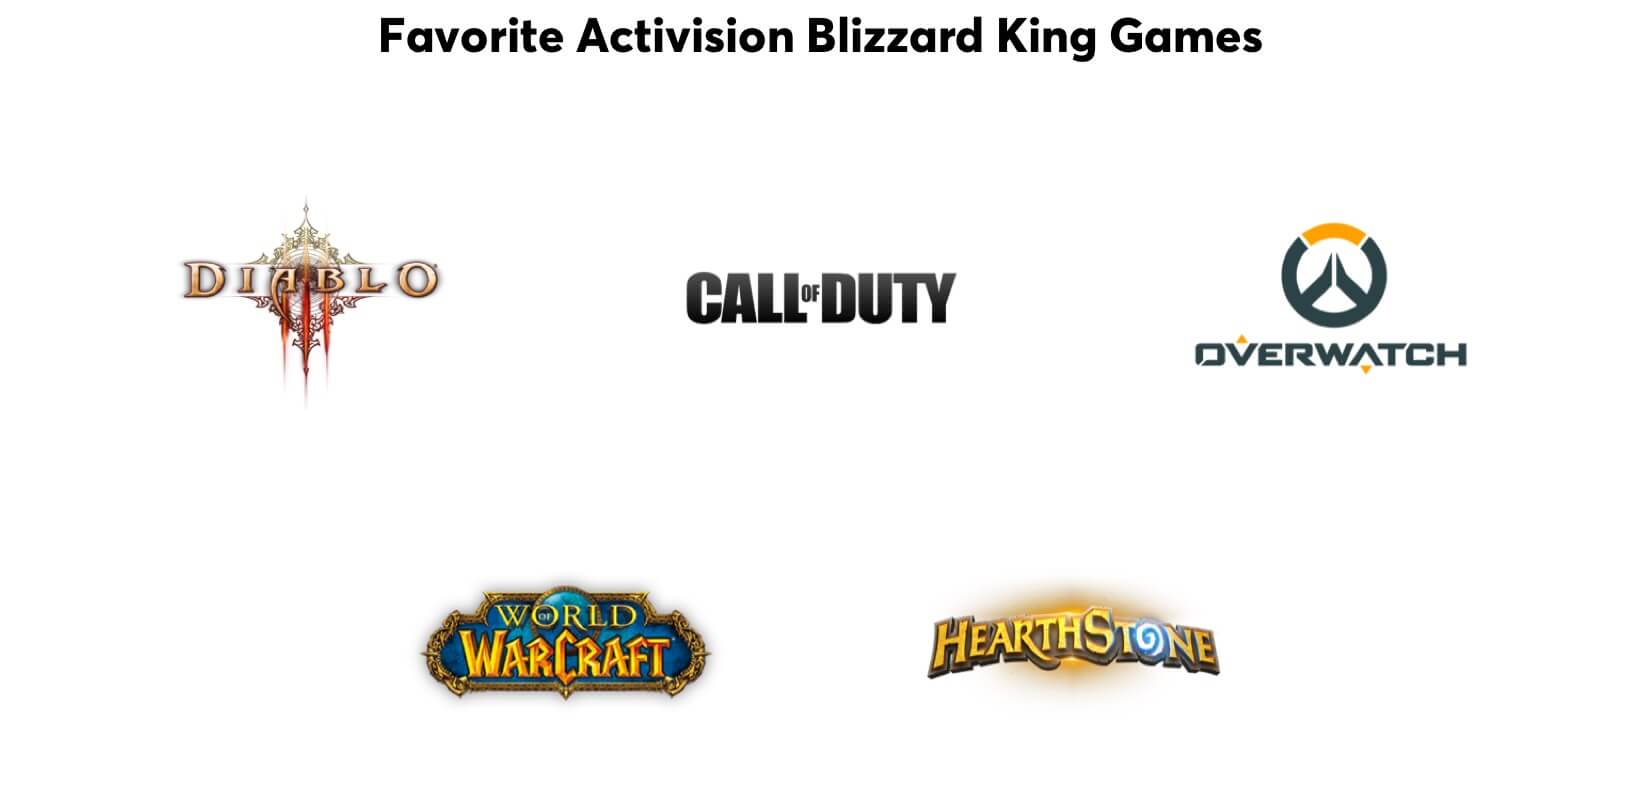 Juegos favoritos de los entregados: Diablo, Call of Duty, Overwatch, World of WarCraft y Hearthstone